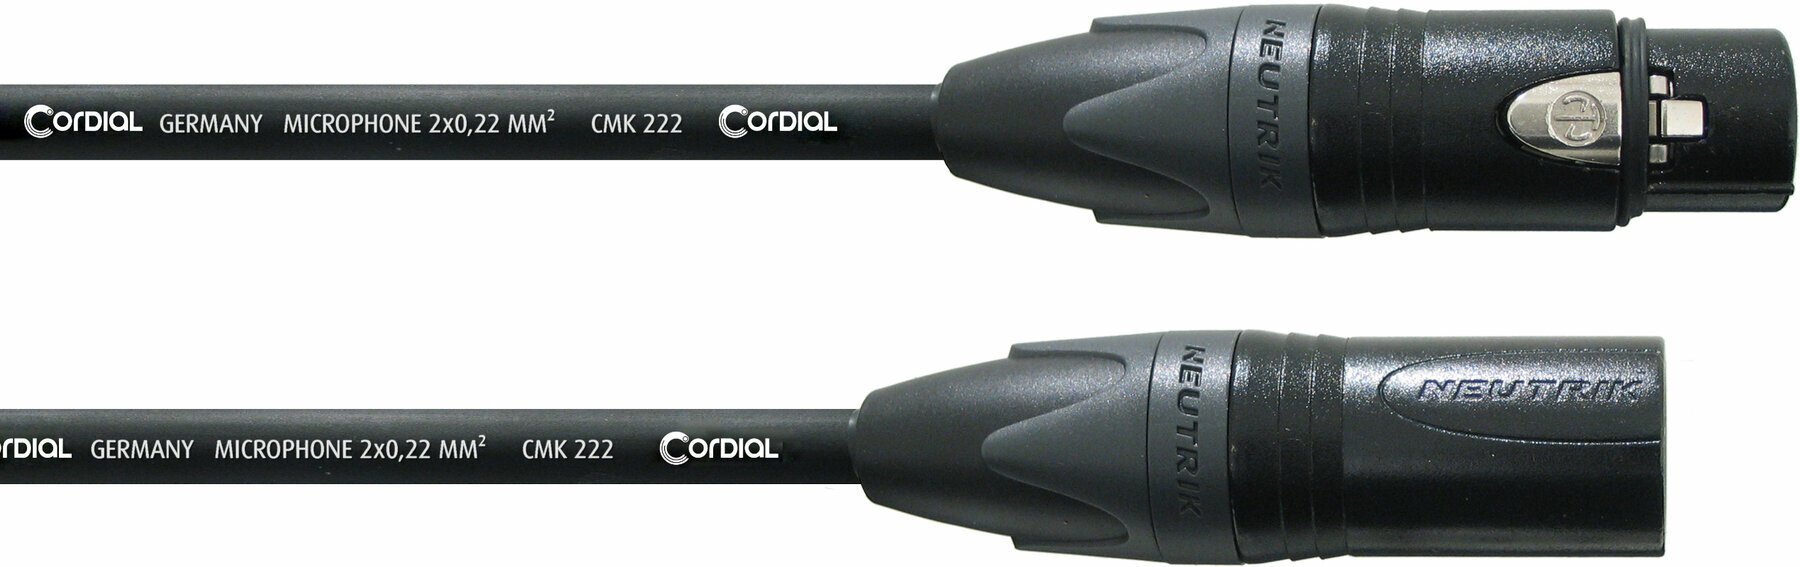 Cablu complet pentru microfoane Cordial CPM 10 FM Negru 10 m